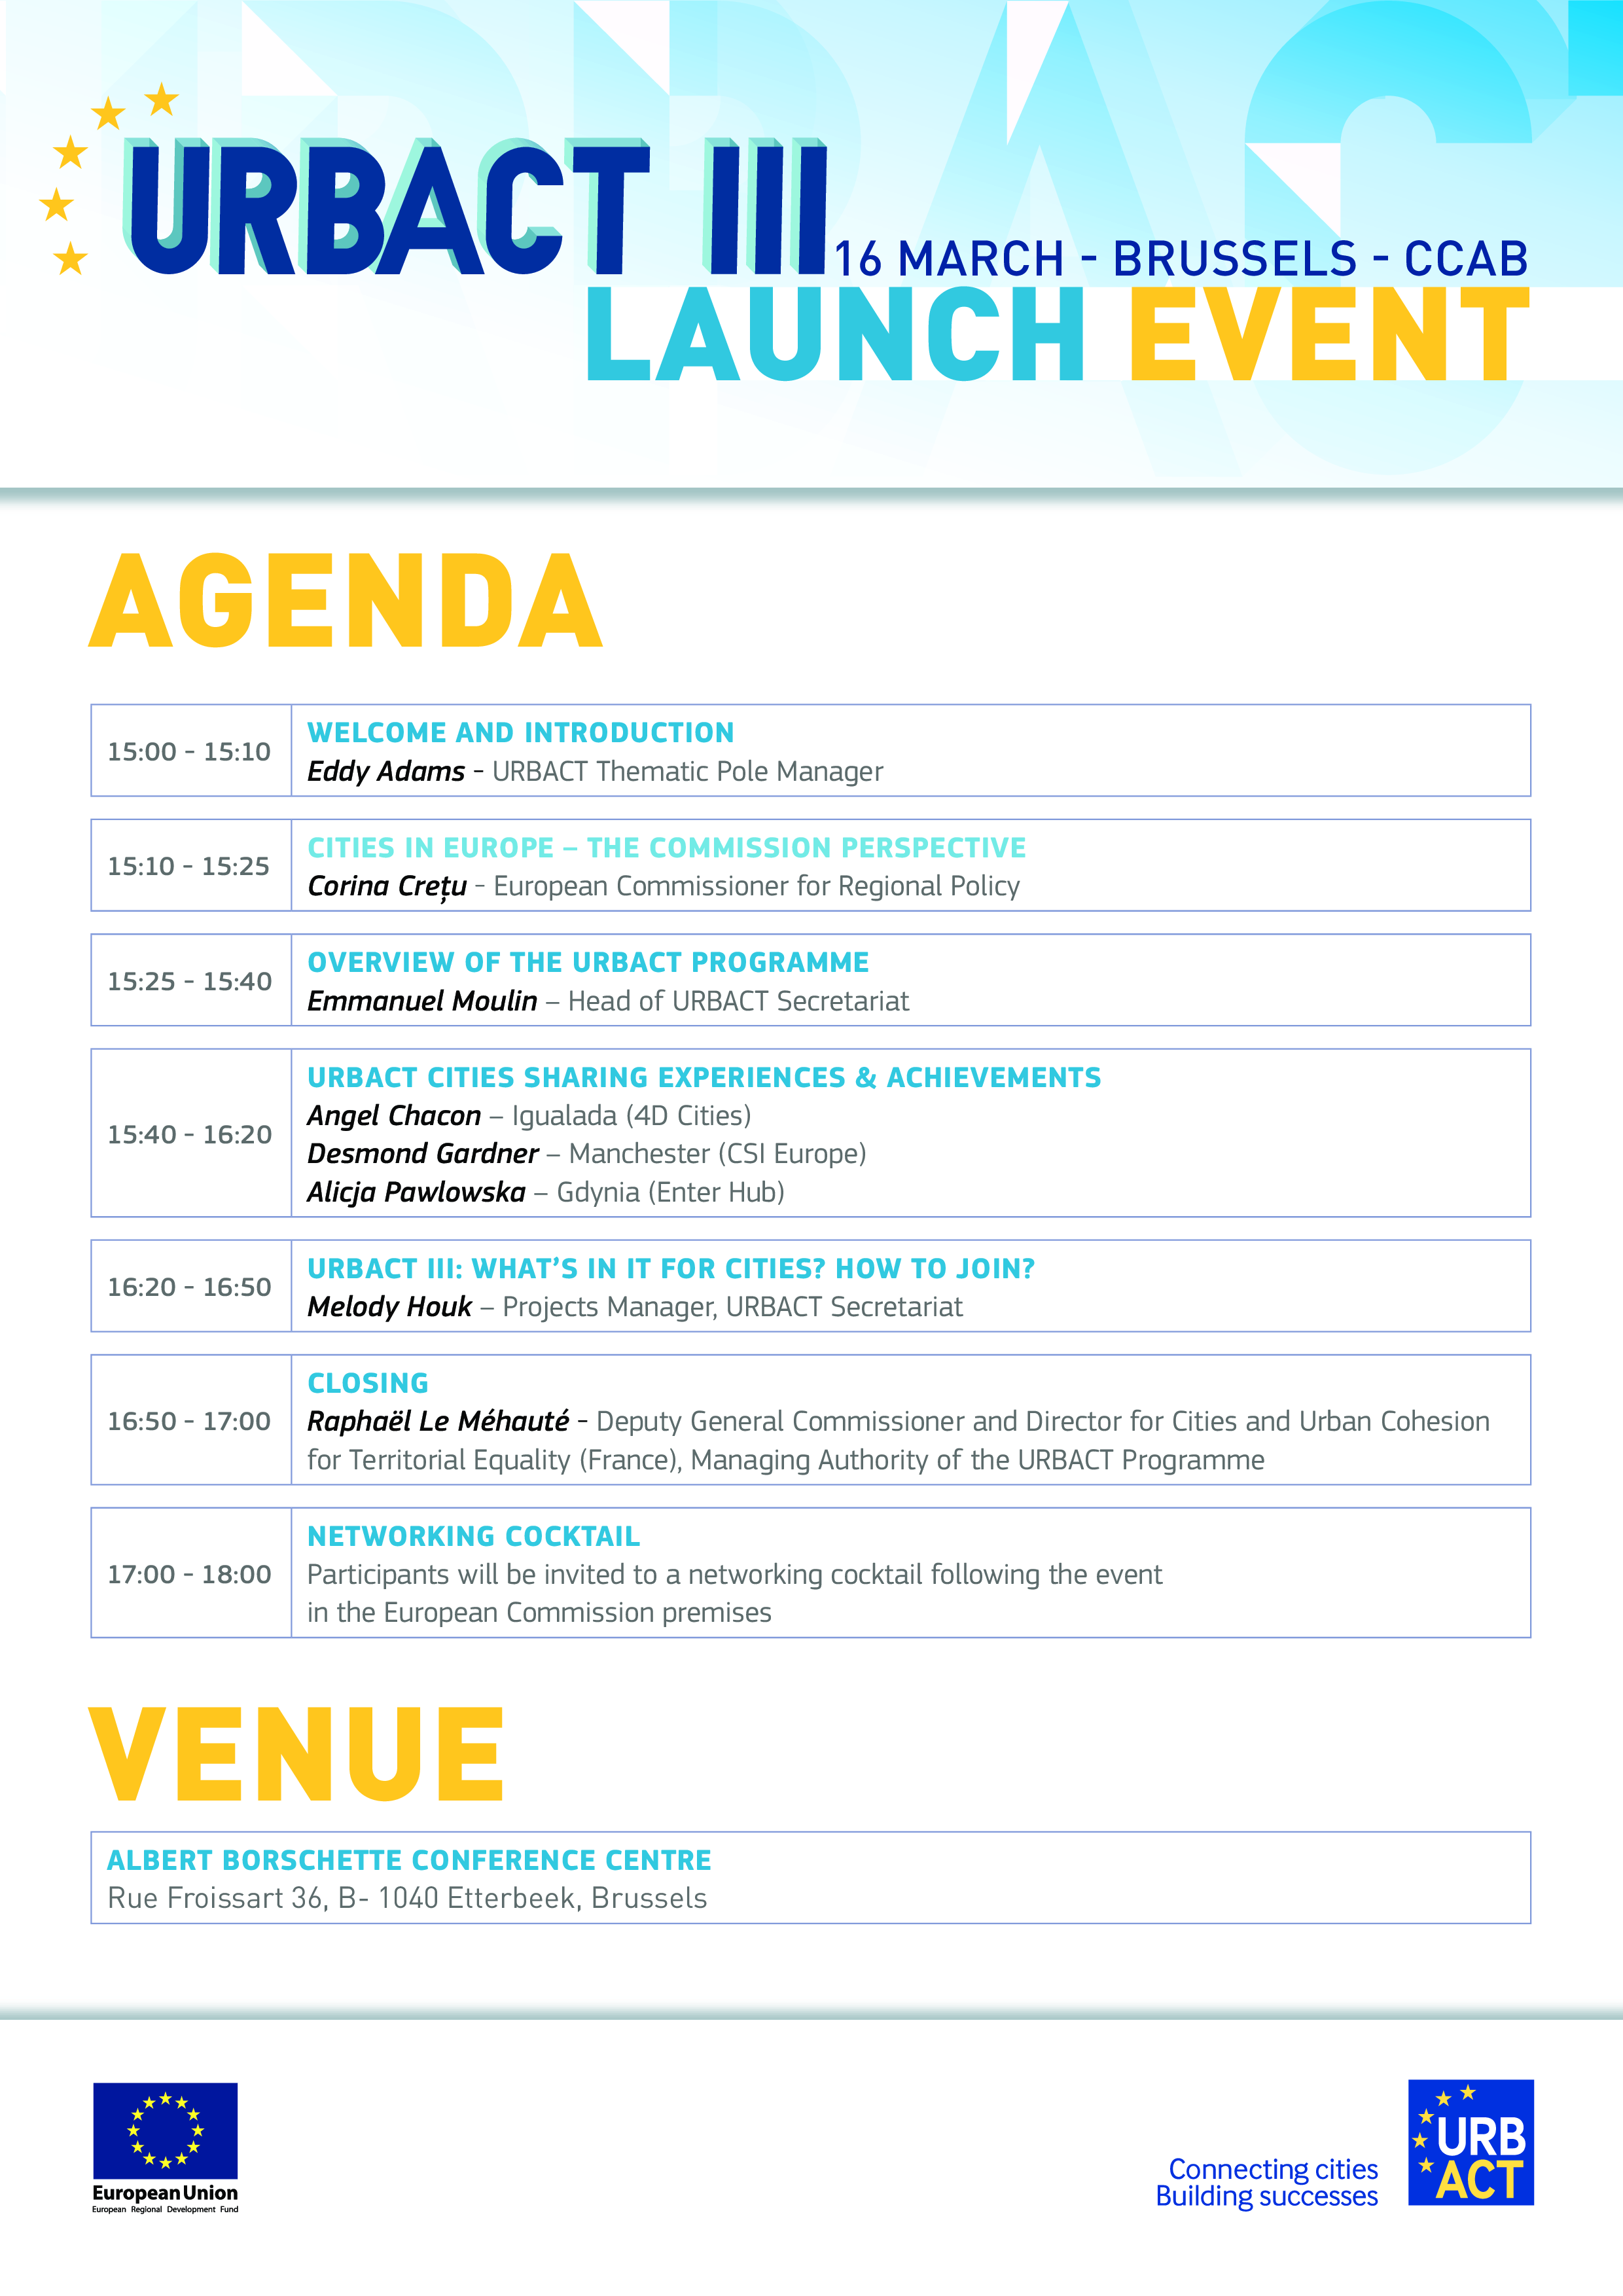 Launch Event Agenda Templates at allbusinesstemplates com